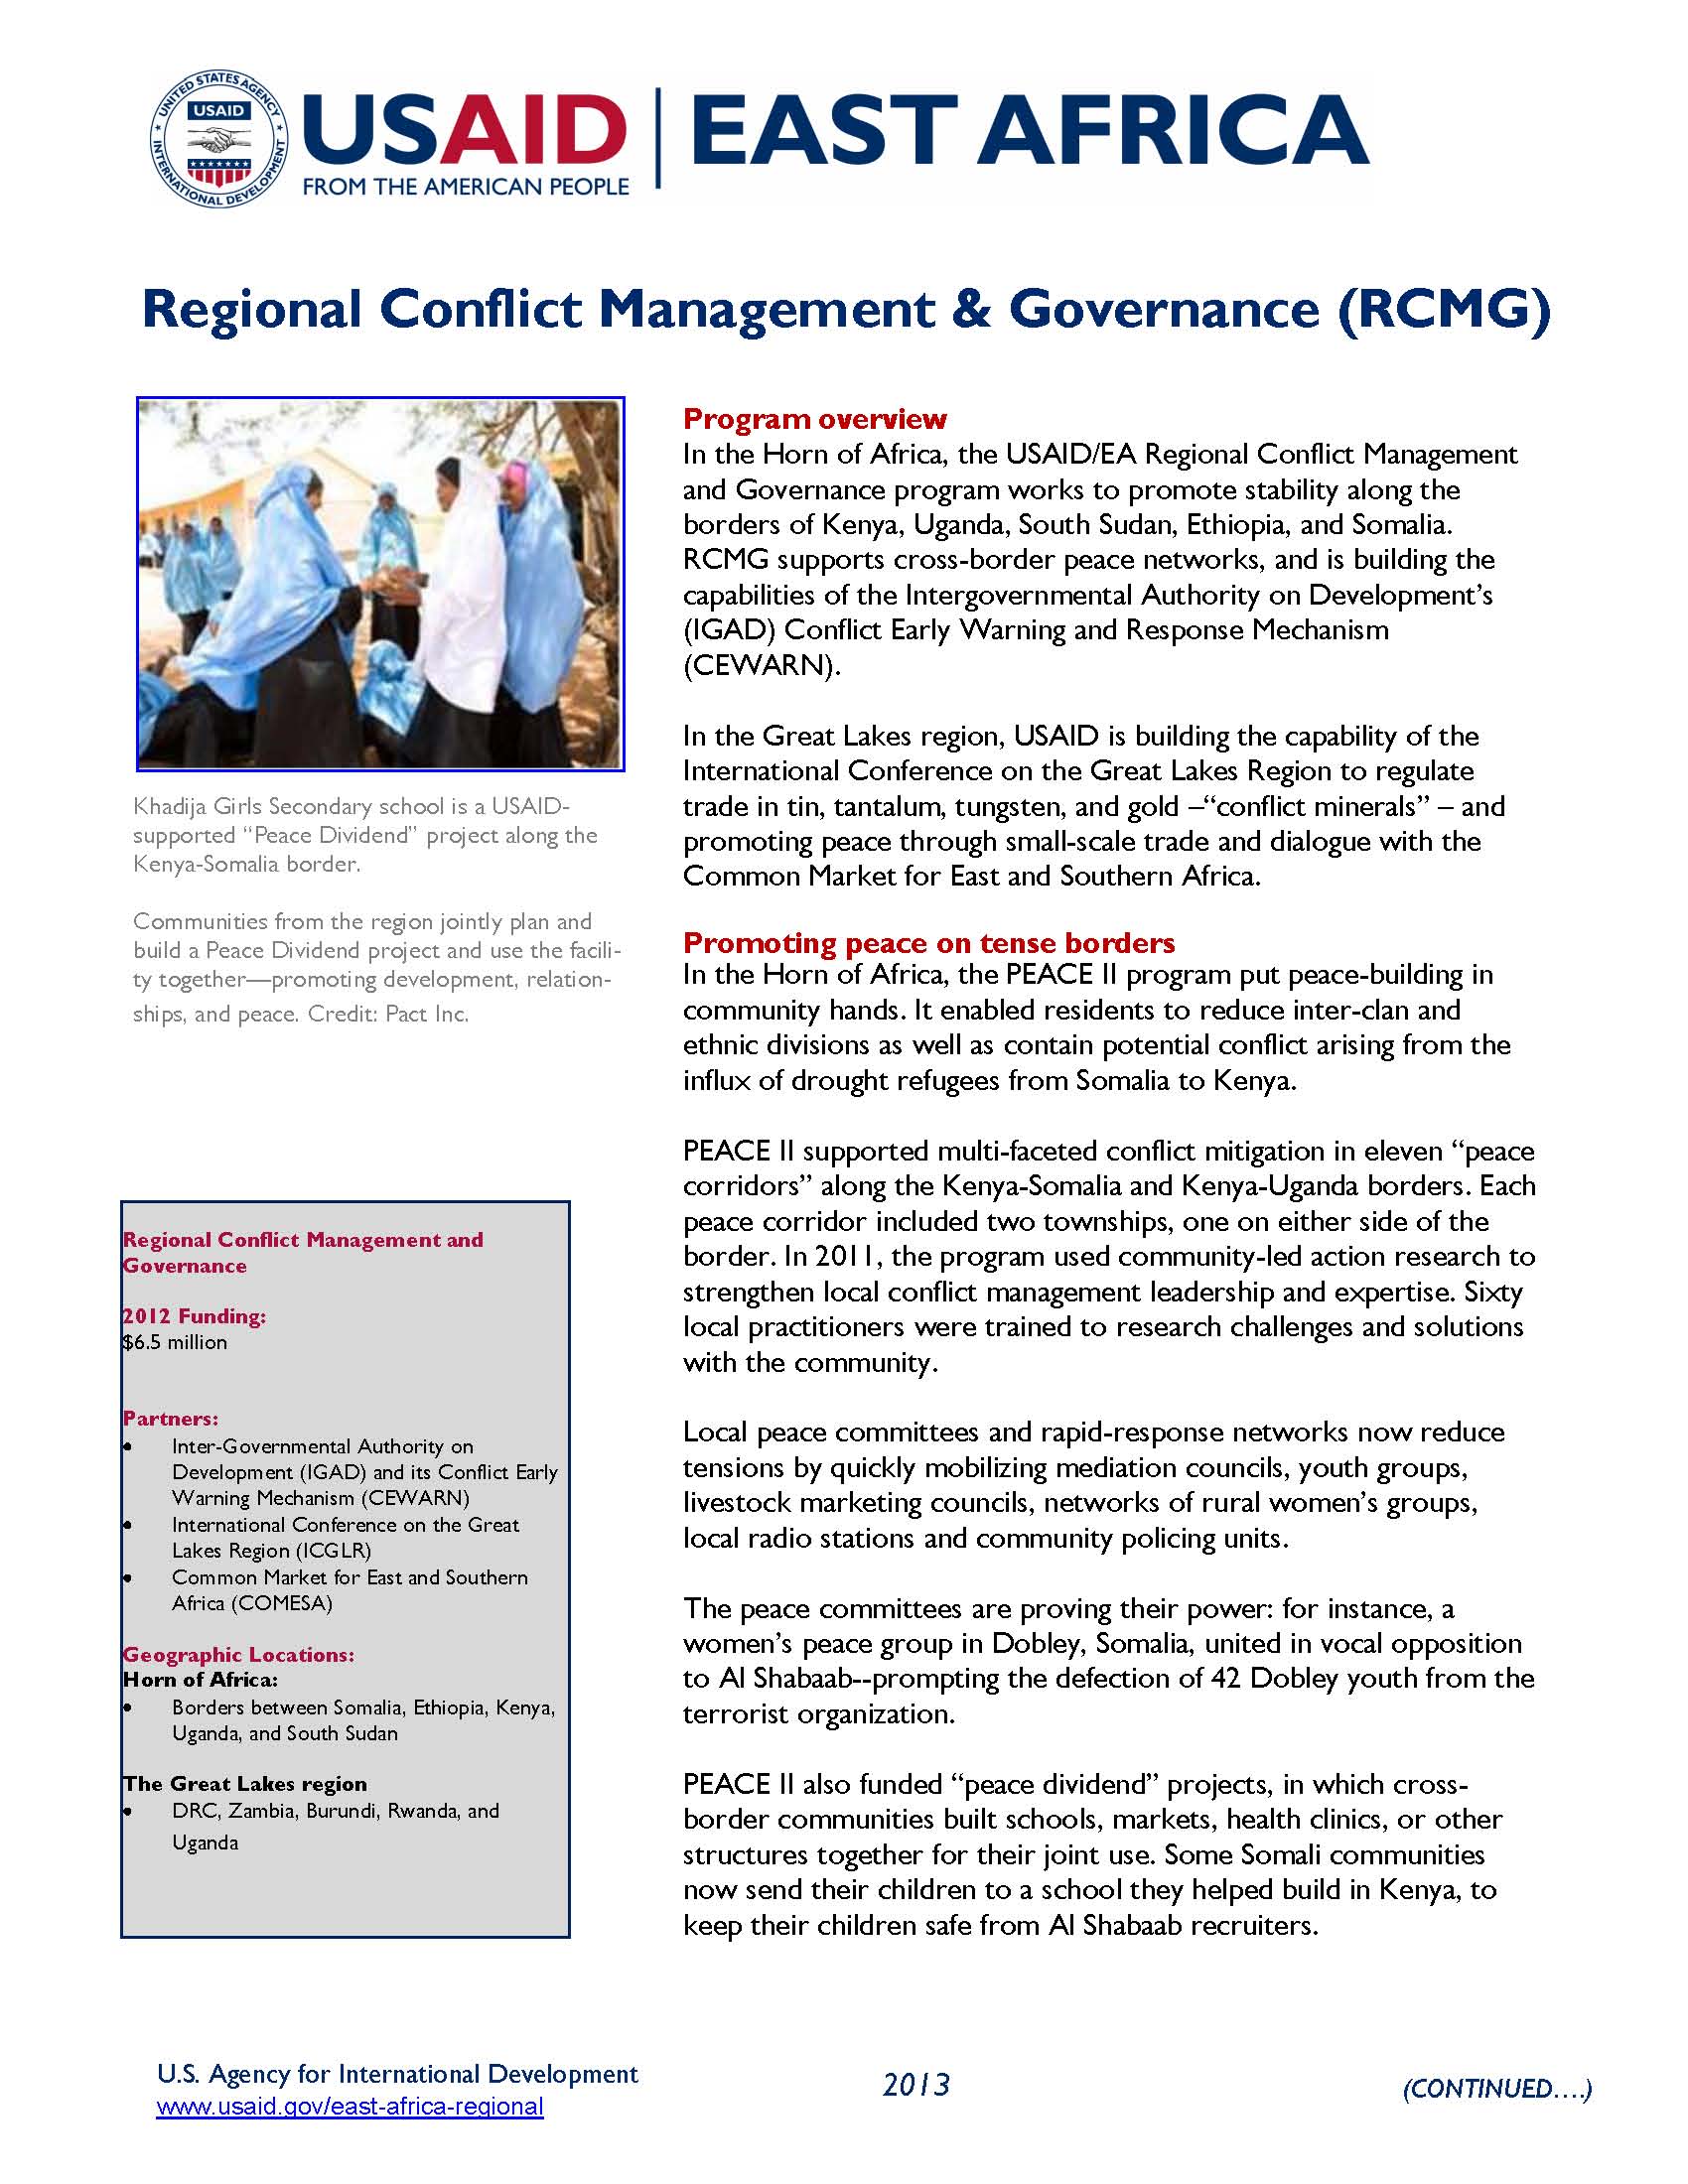 Regional Conflict Management & Governance 